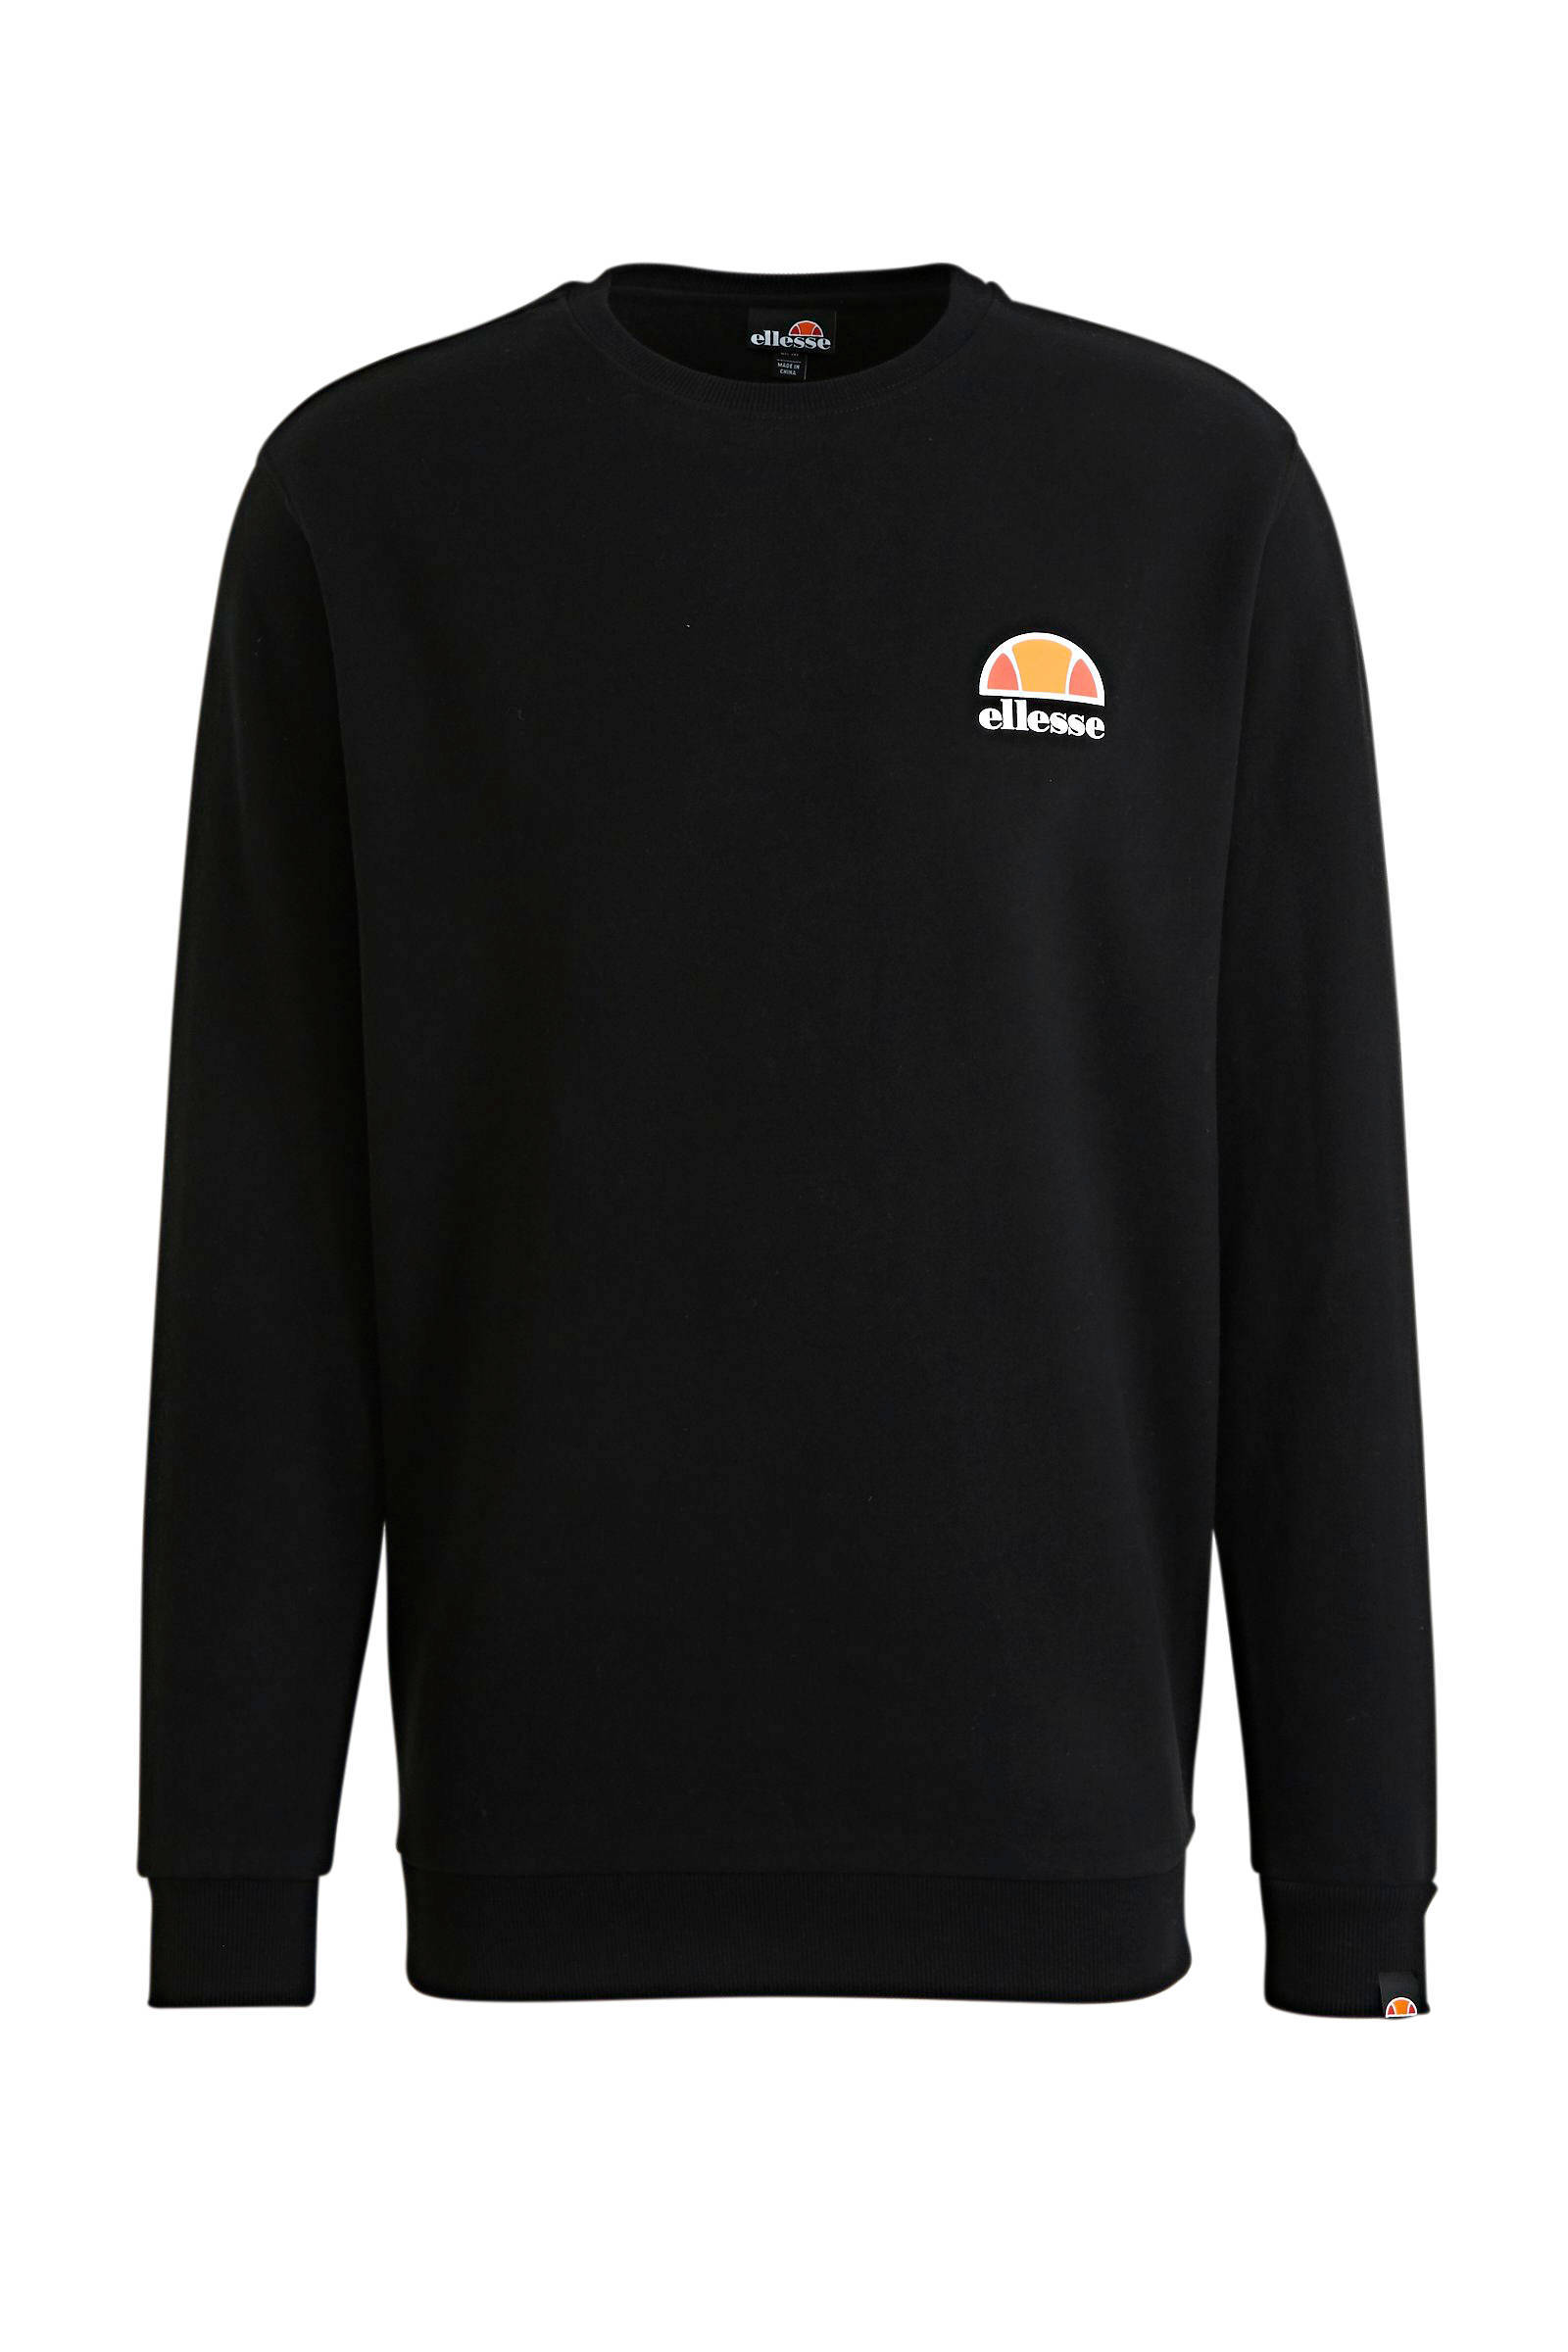 Ellesse Diveria Heren Sweatshirts Black 80% Katoen, 20% Polyester online kopen